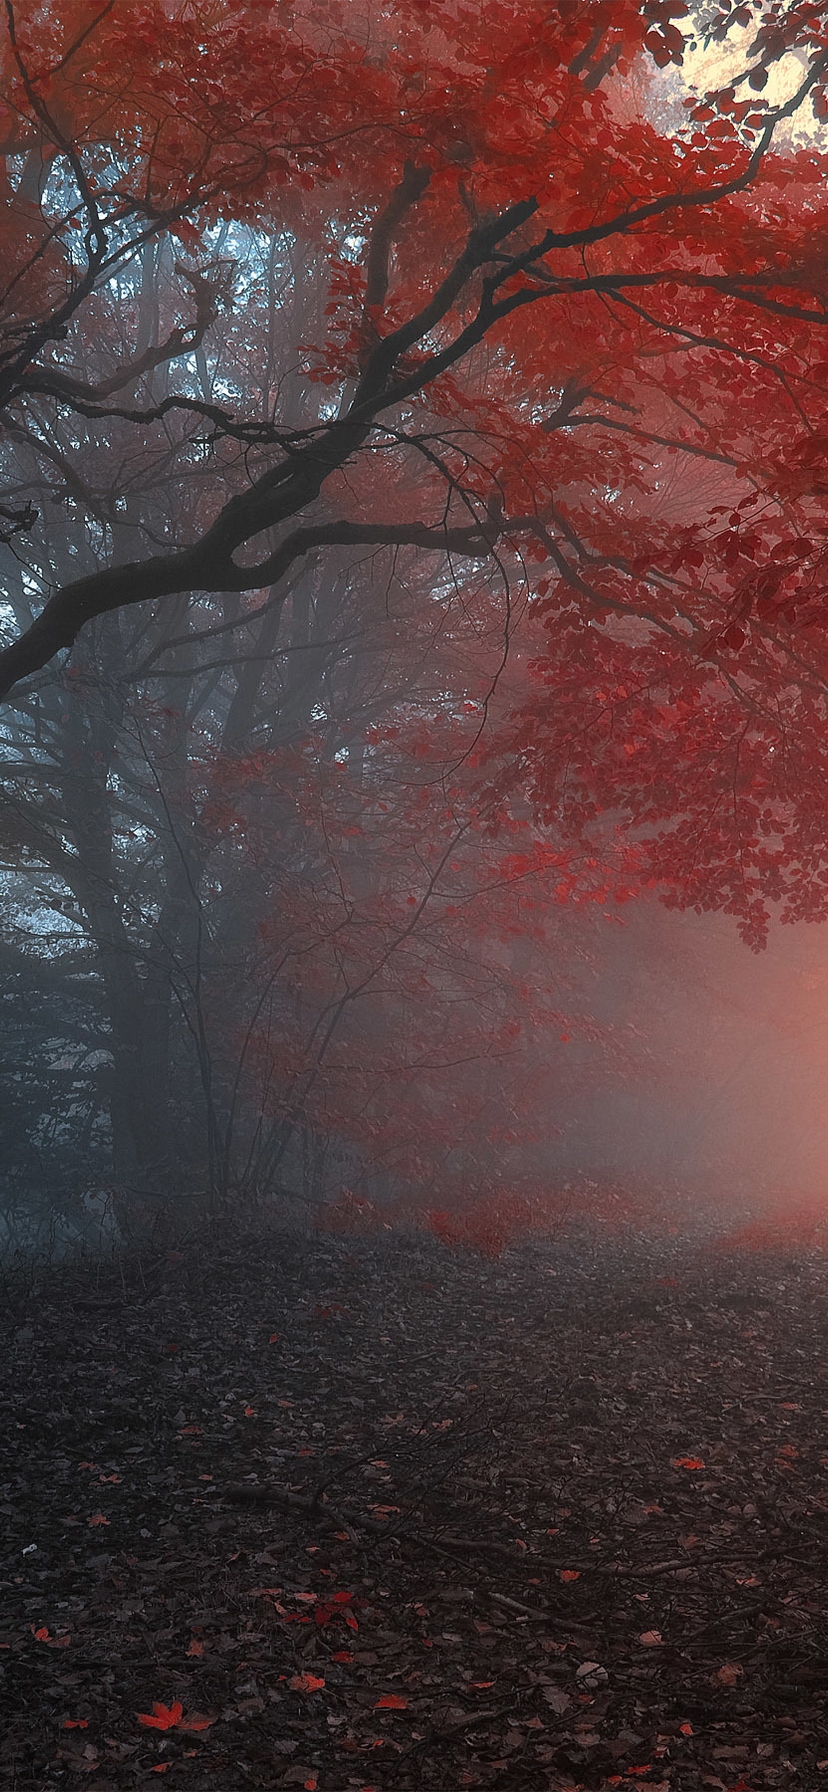 Картинка: Деревья, лес, туман, дорожка, красные листья